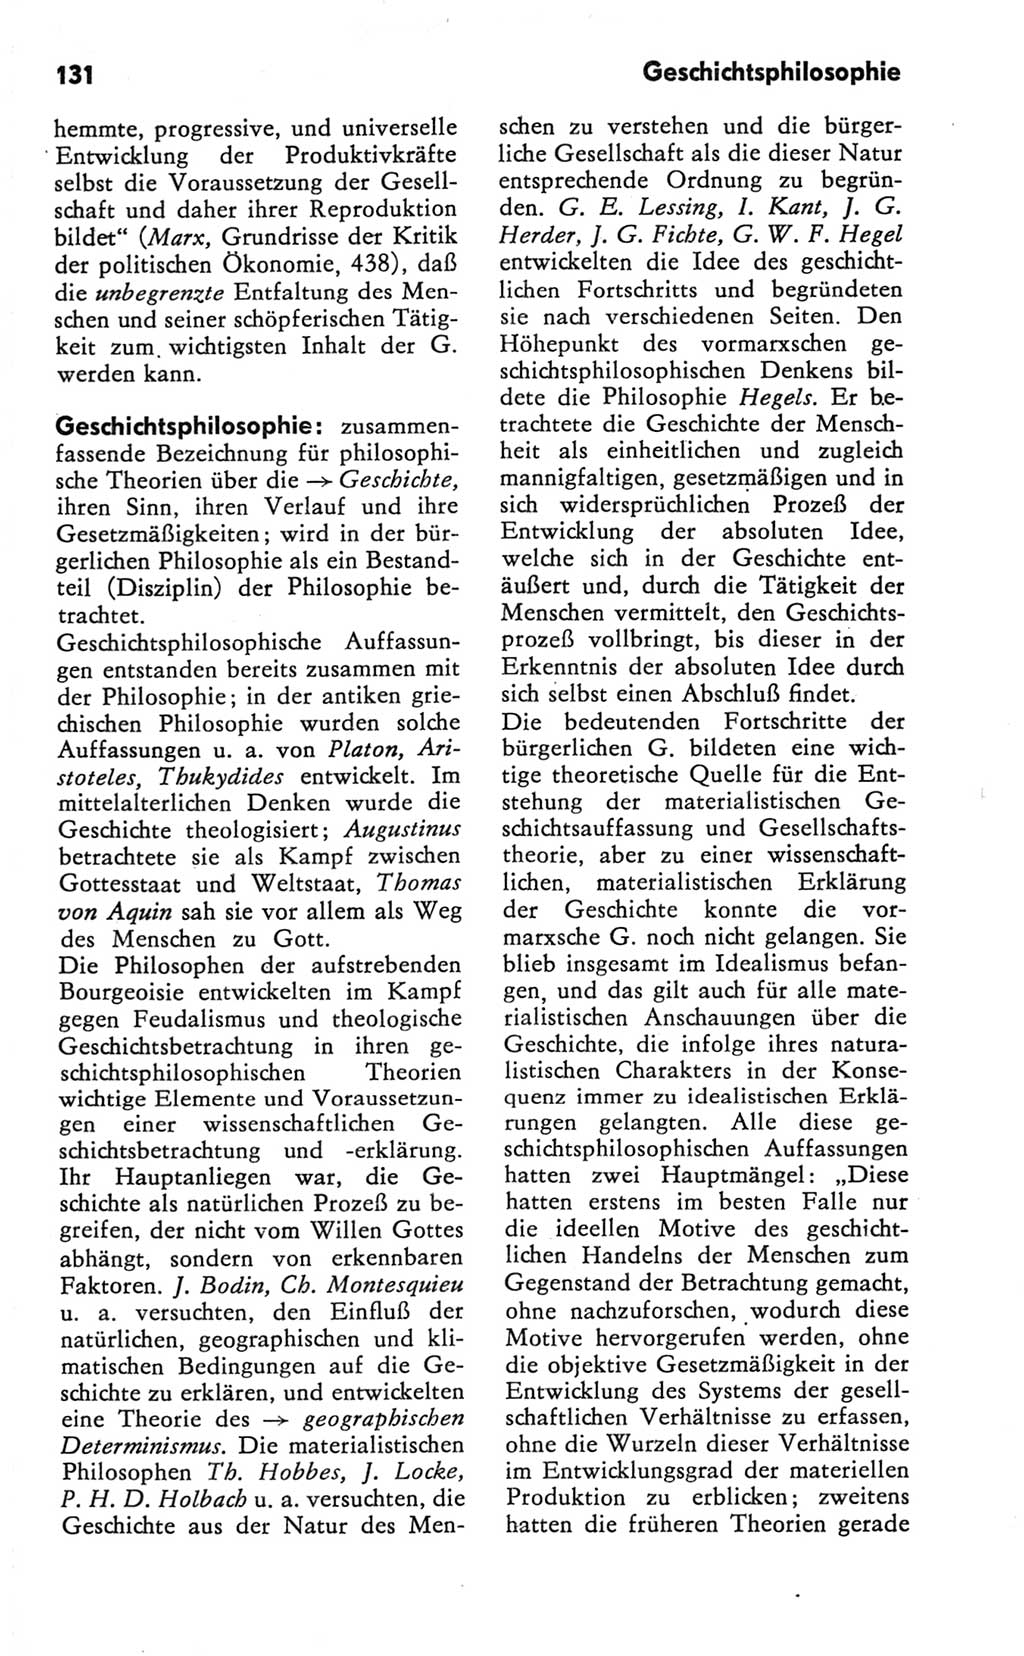 Kleines Wörterbuch der marxistisch-leninistischen Philosophie [Deutsche Demokratische Republik (DDR)] 1981, Seite 131 (Kl. Wb. ML Phil. DDR 1981, S. 131)